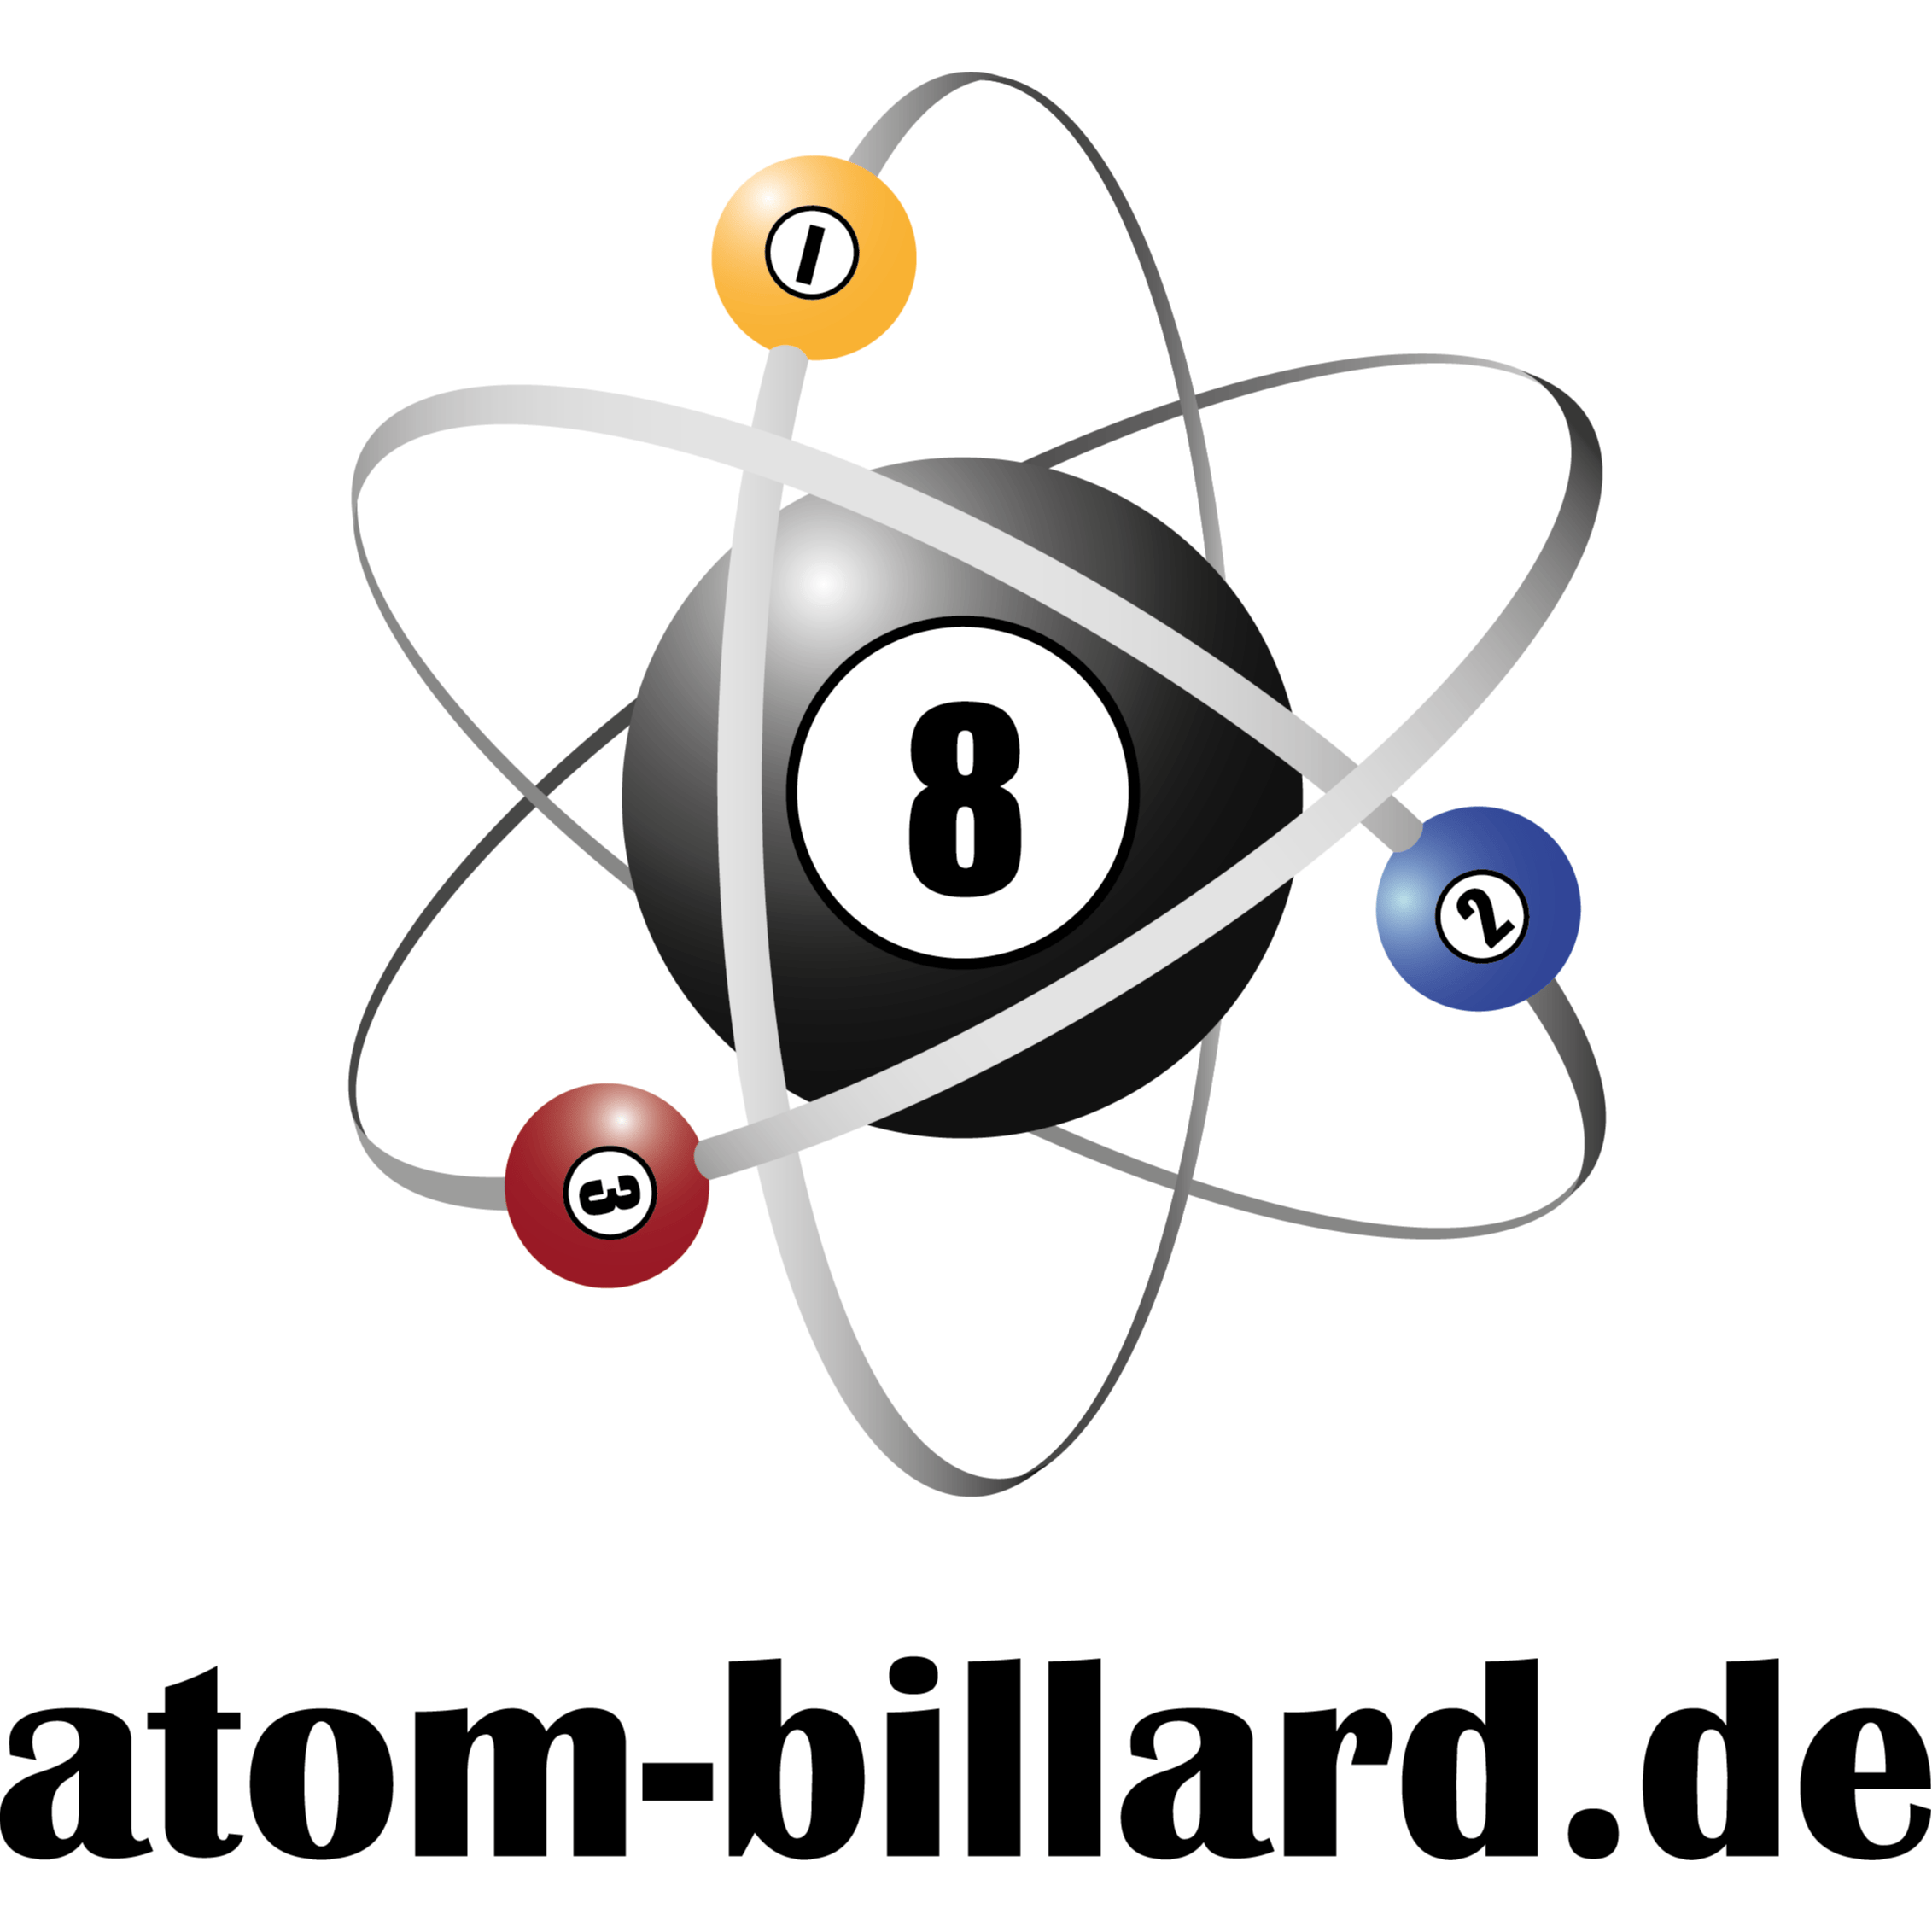 atom-billard.de Billardtische & Billardqueues in Dasing - Logo